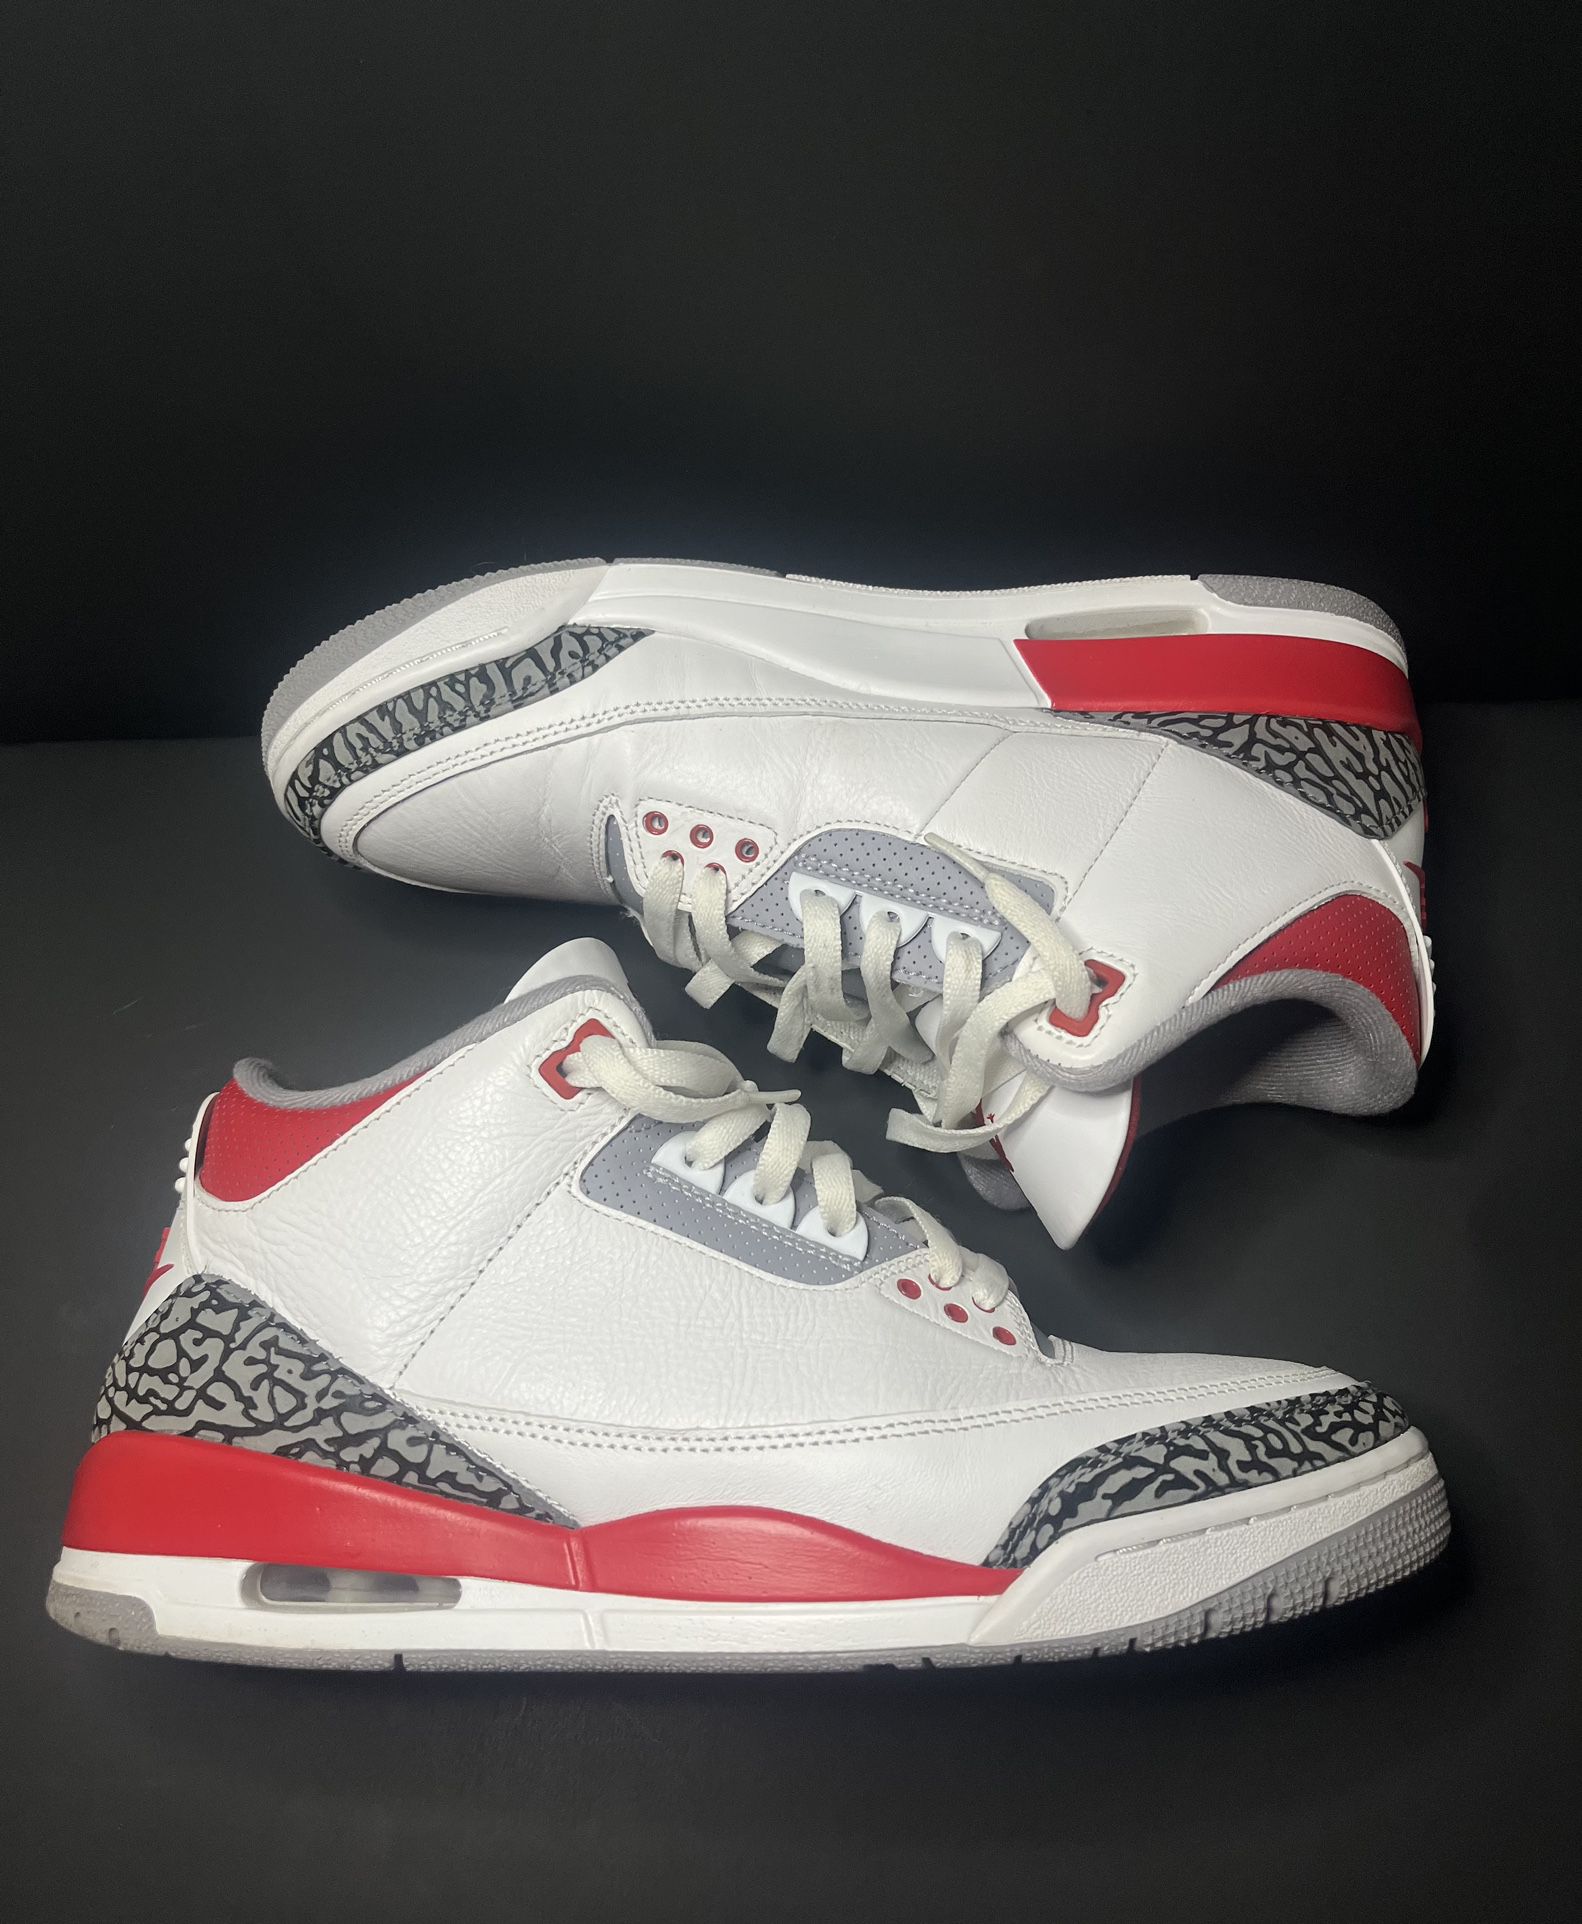 Jordan 3 Fire Red Size 11.5